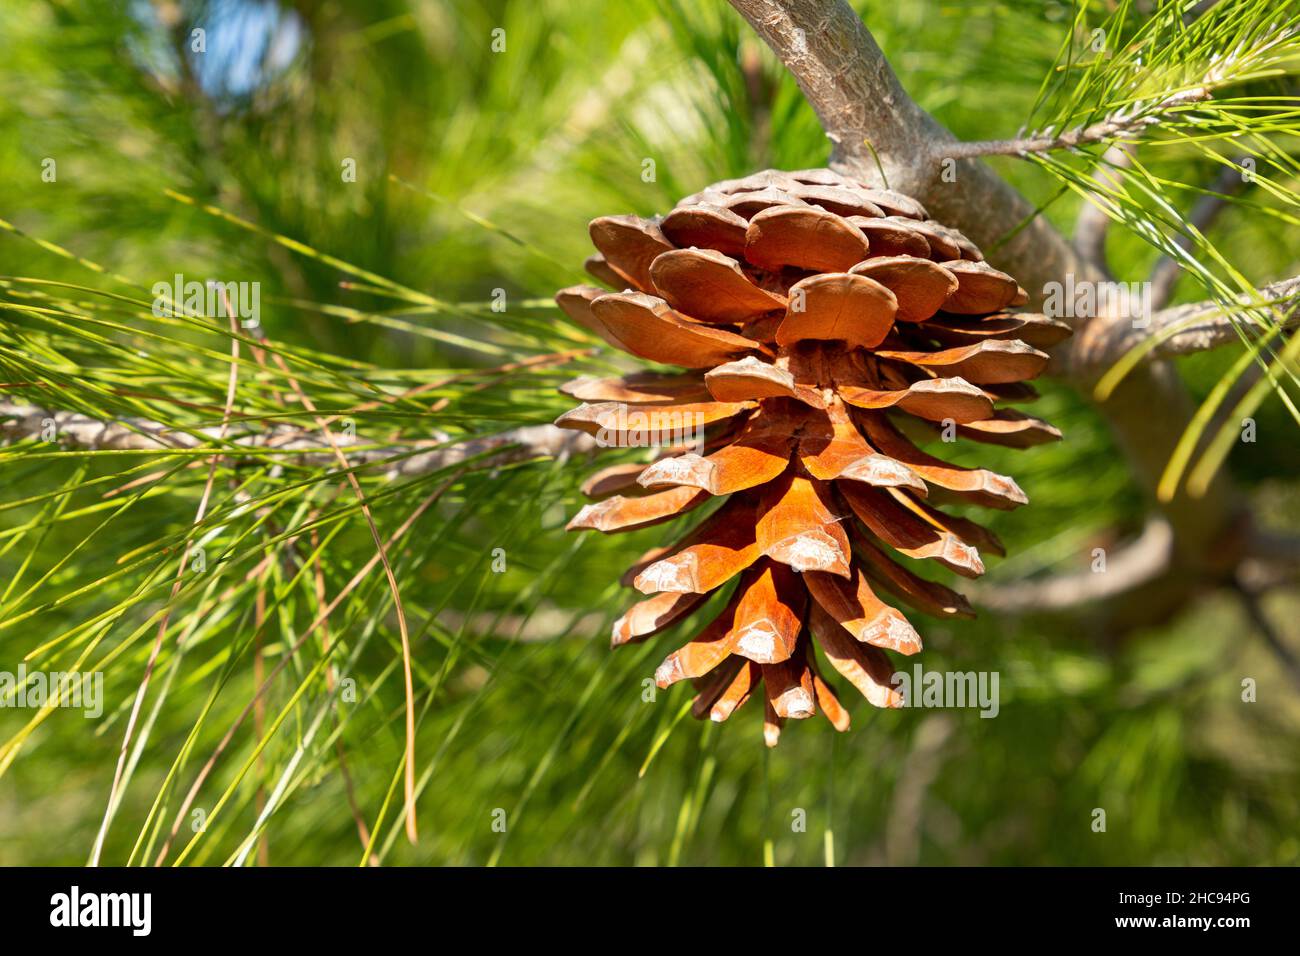 Cedar cone on a green branch Stock Photo